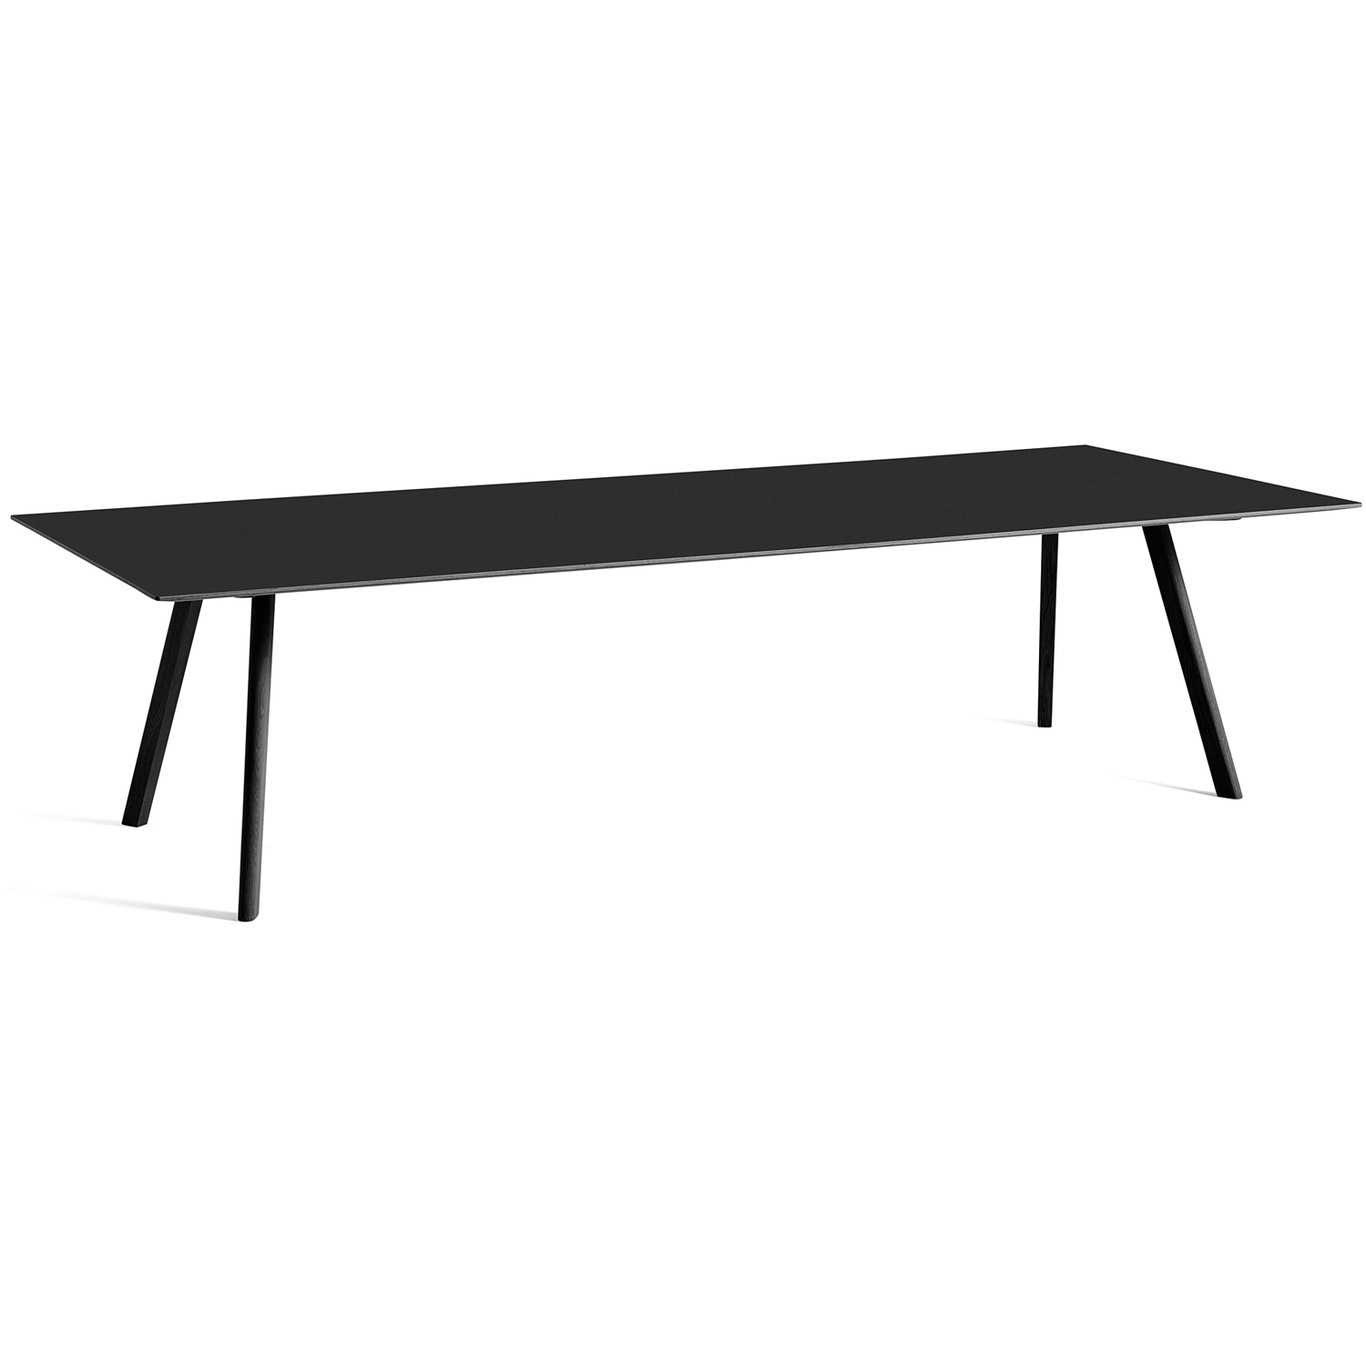 CPH 30 Tisch 300x90 cm, Schwarz Mit Wasserlack Behandelte Eiche / Schwarz Linoleum